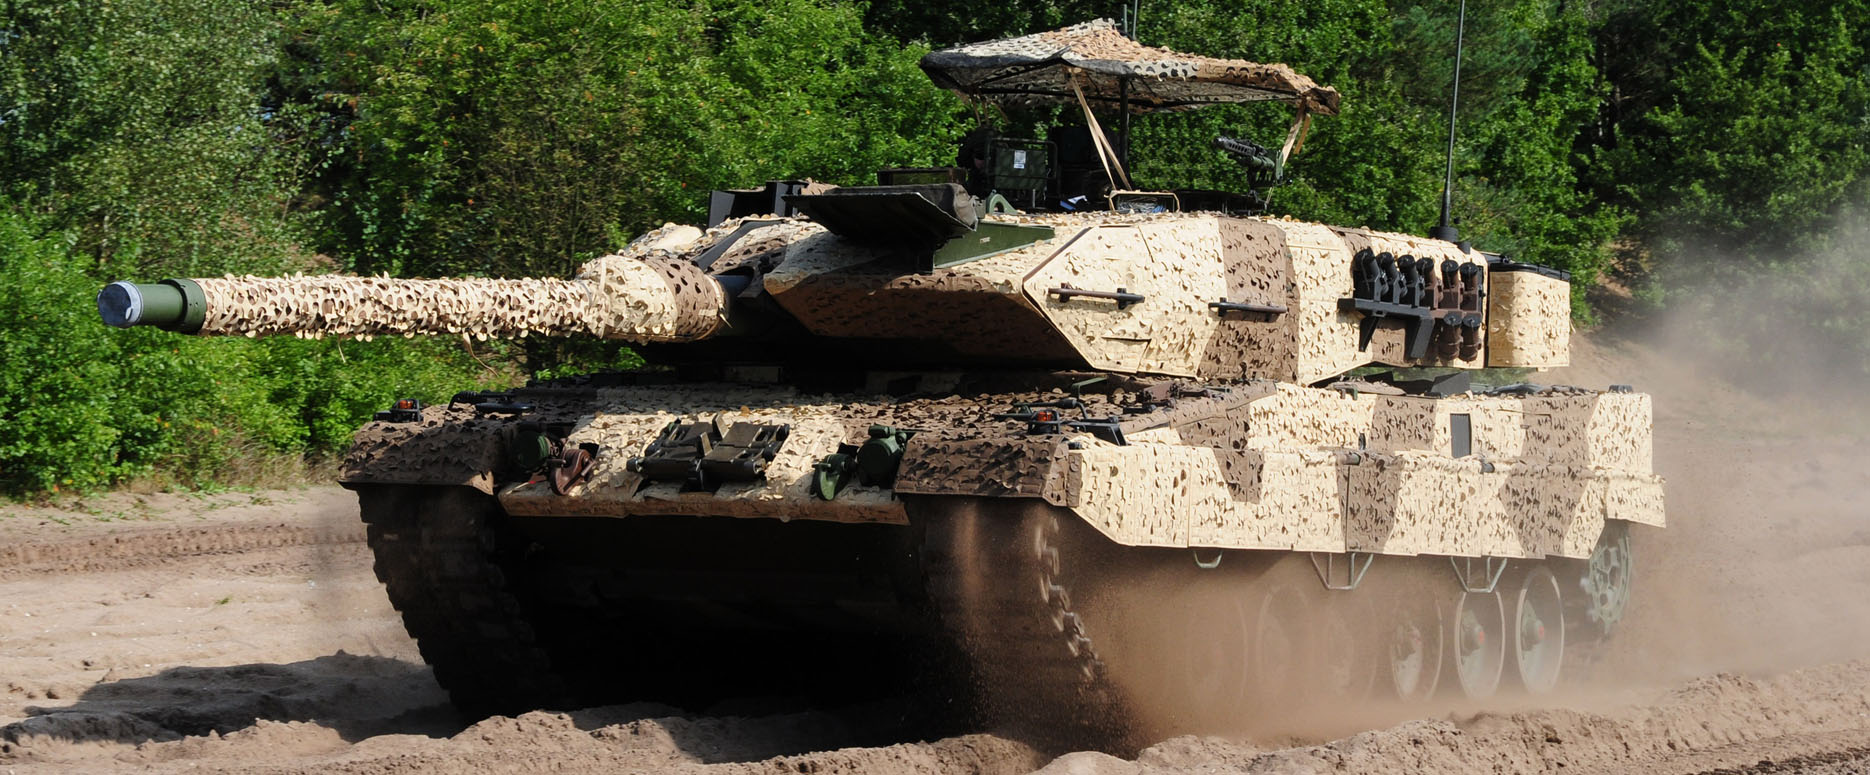 LEOPARD 2 Kampfpanzer fährt durch trockenen Boden aus Erde am Waldrand